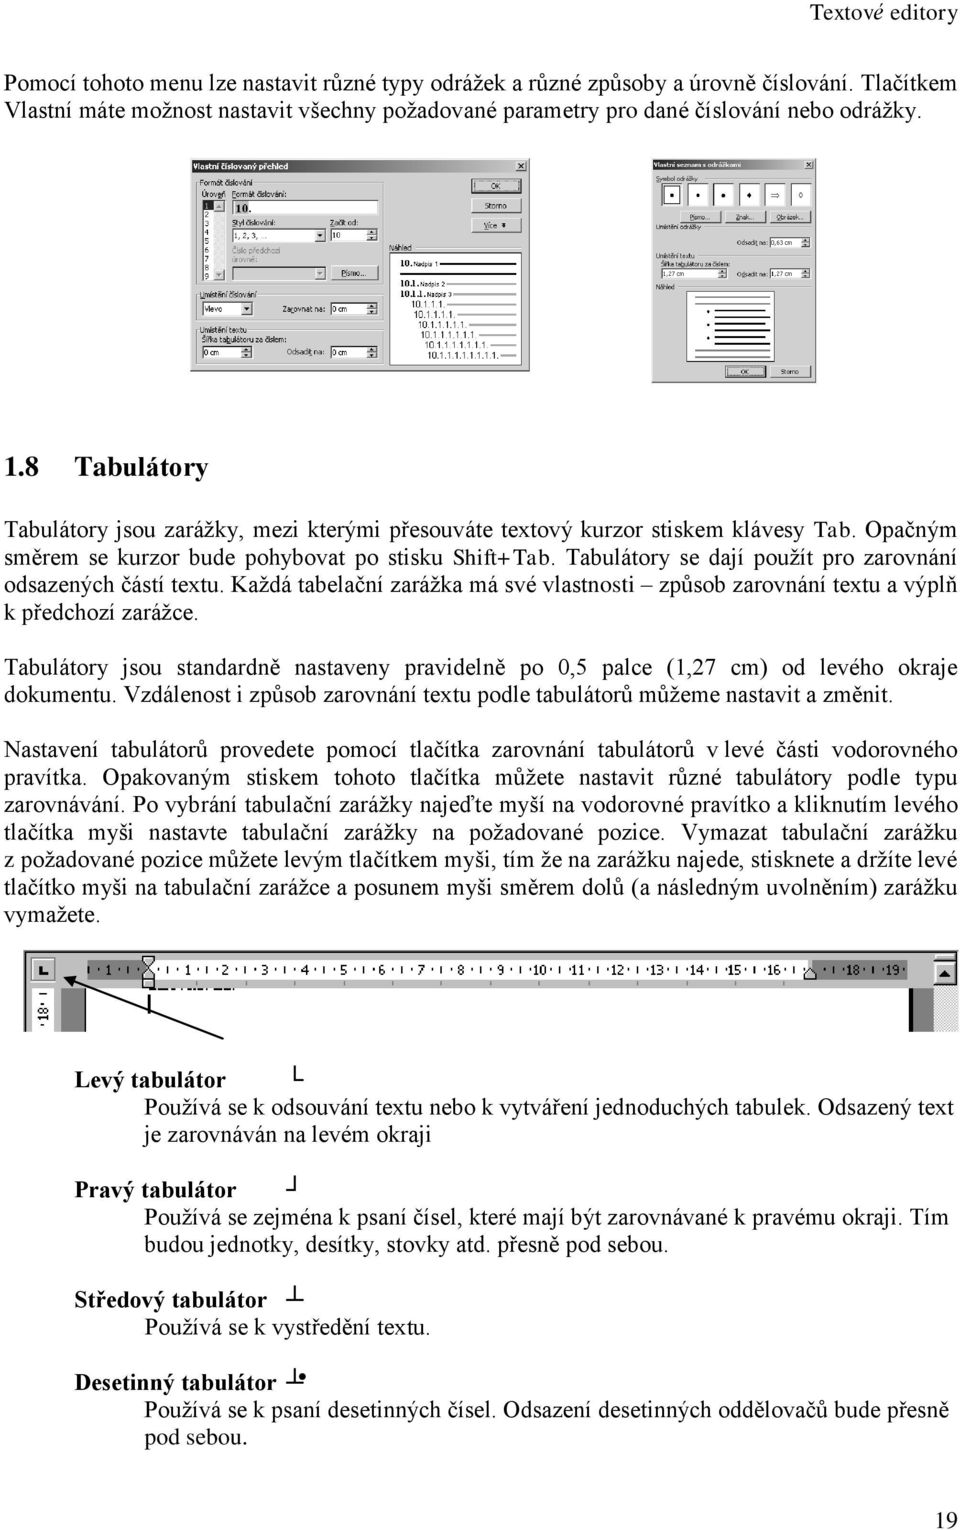 Tabulátory se dají použít pro zarovnání odsazených částí textu. Každá tabelační zarážka má své vlastnosti způsob zarovnání textu a výplň k předchozí zarážce.